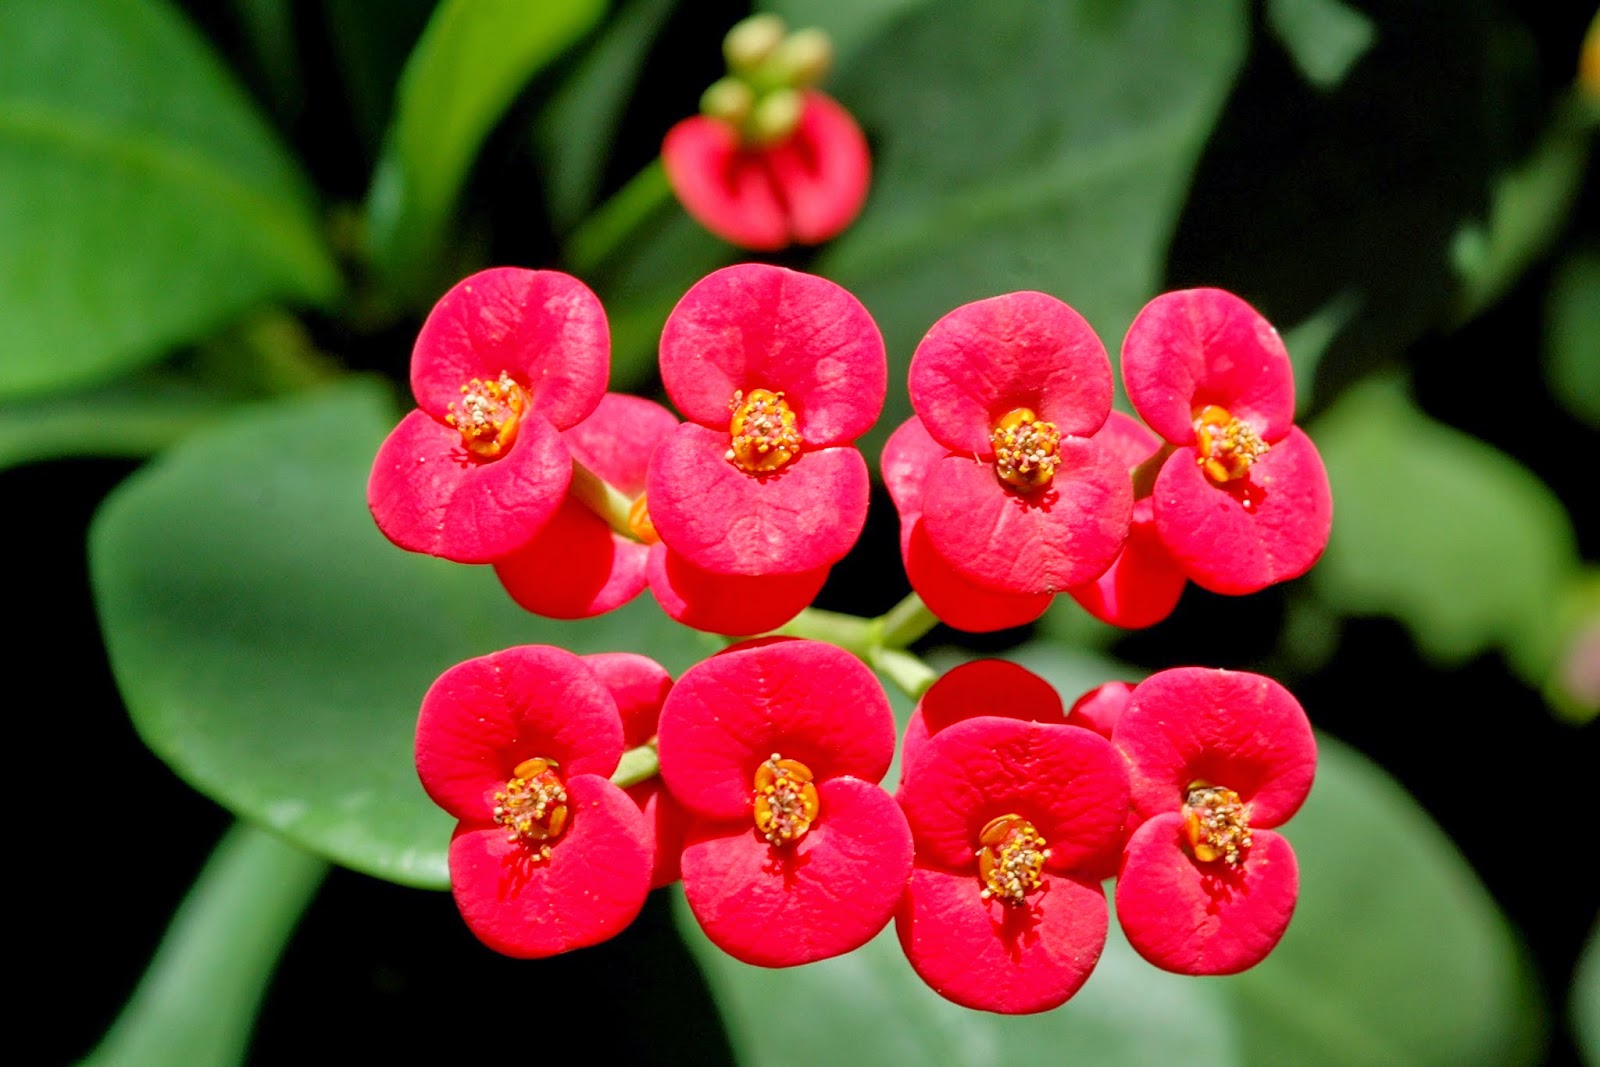  Bunga euphorbia adalah bunga yang indah dan cantik yang memiliki banyak duri pada bagian  Manfaat dan Khasiat Bunga Euphorbia (Euphorbia milii Ch.des Moulins) 